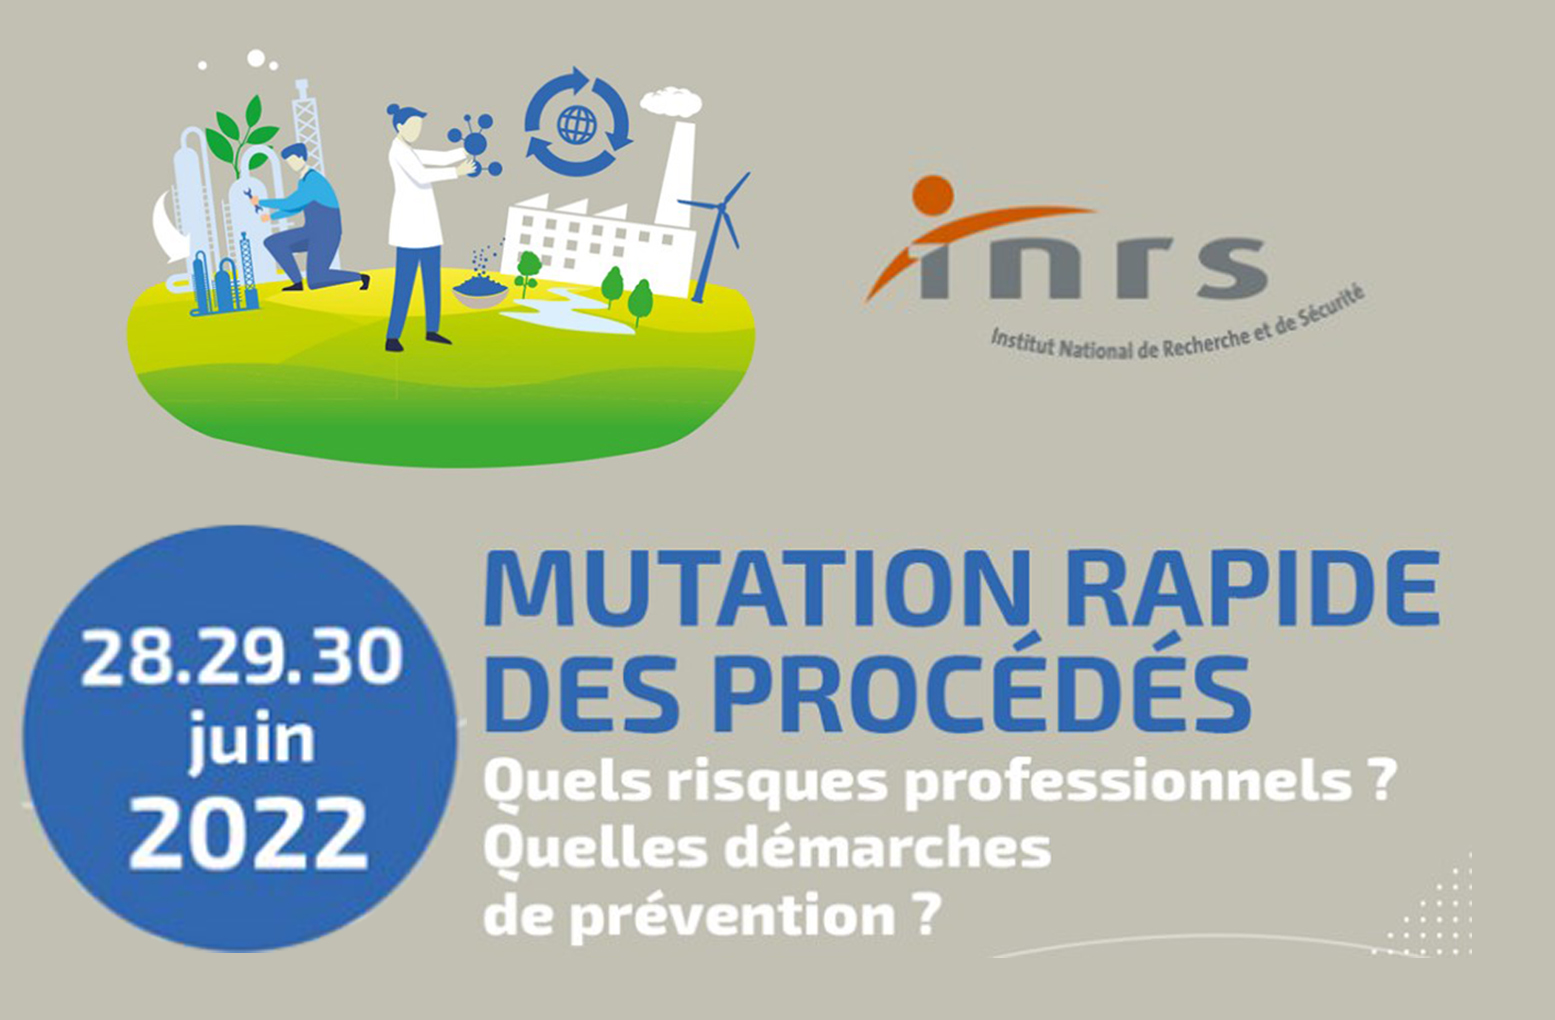 Conférence de l’INRS les 28-29-30 juin 2022 : Mutation rapide des procédés